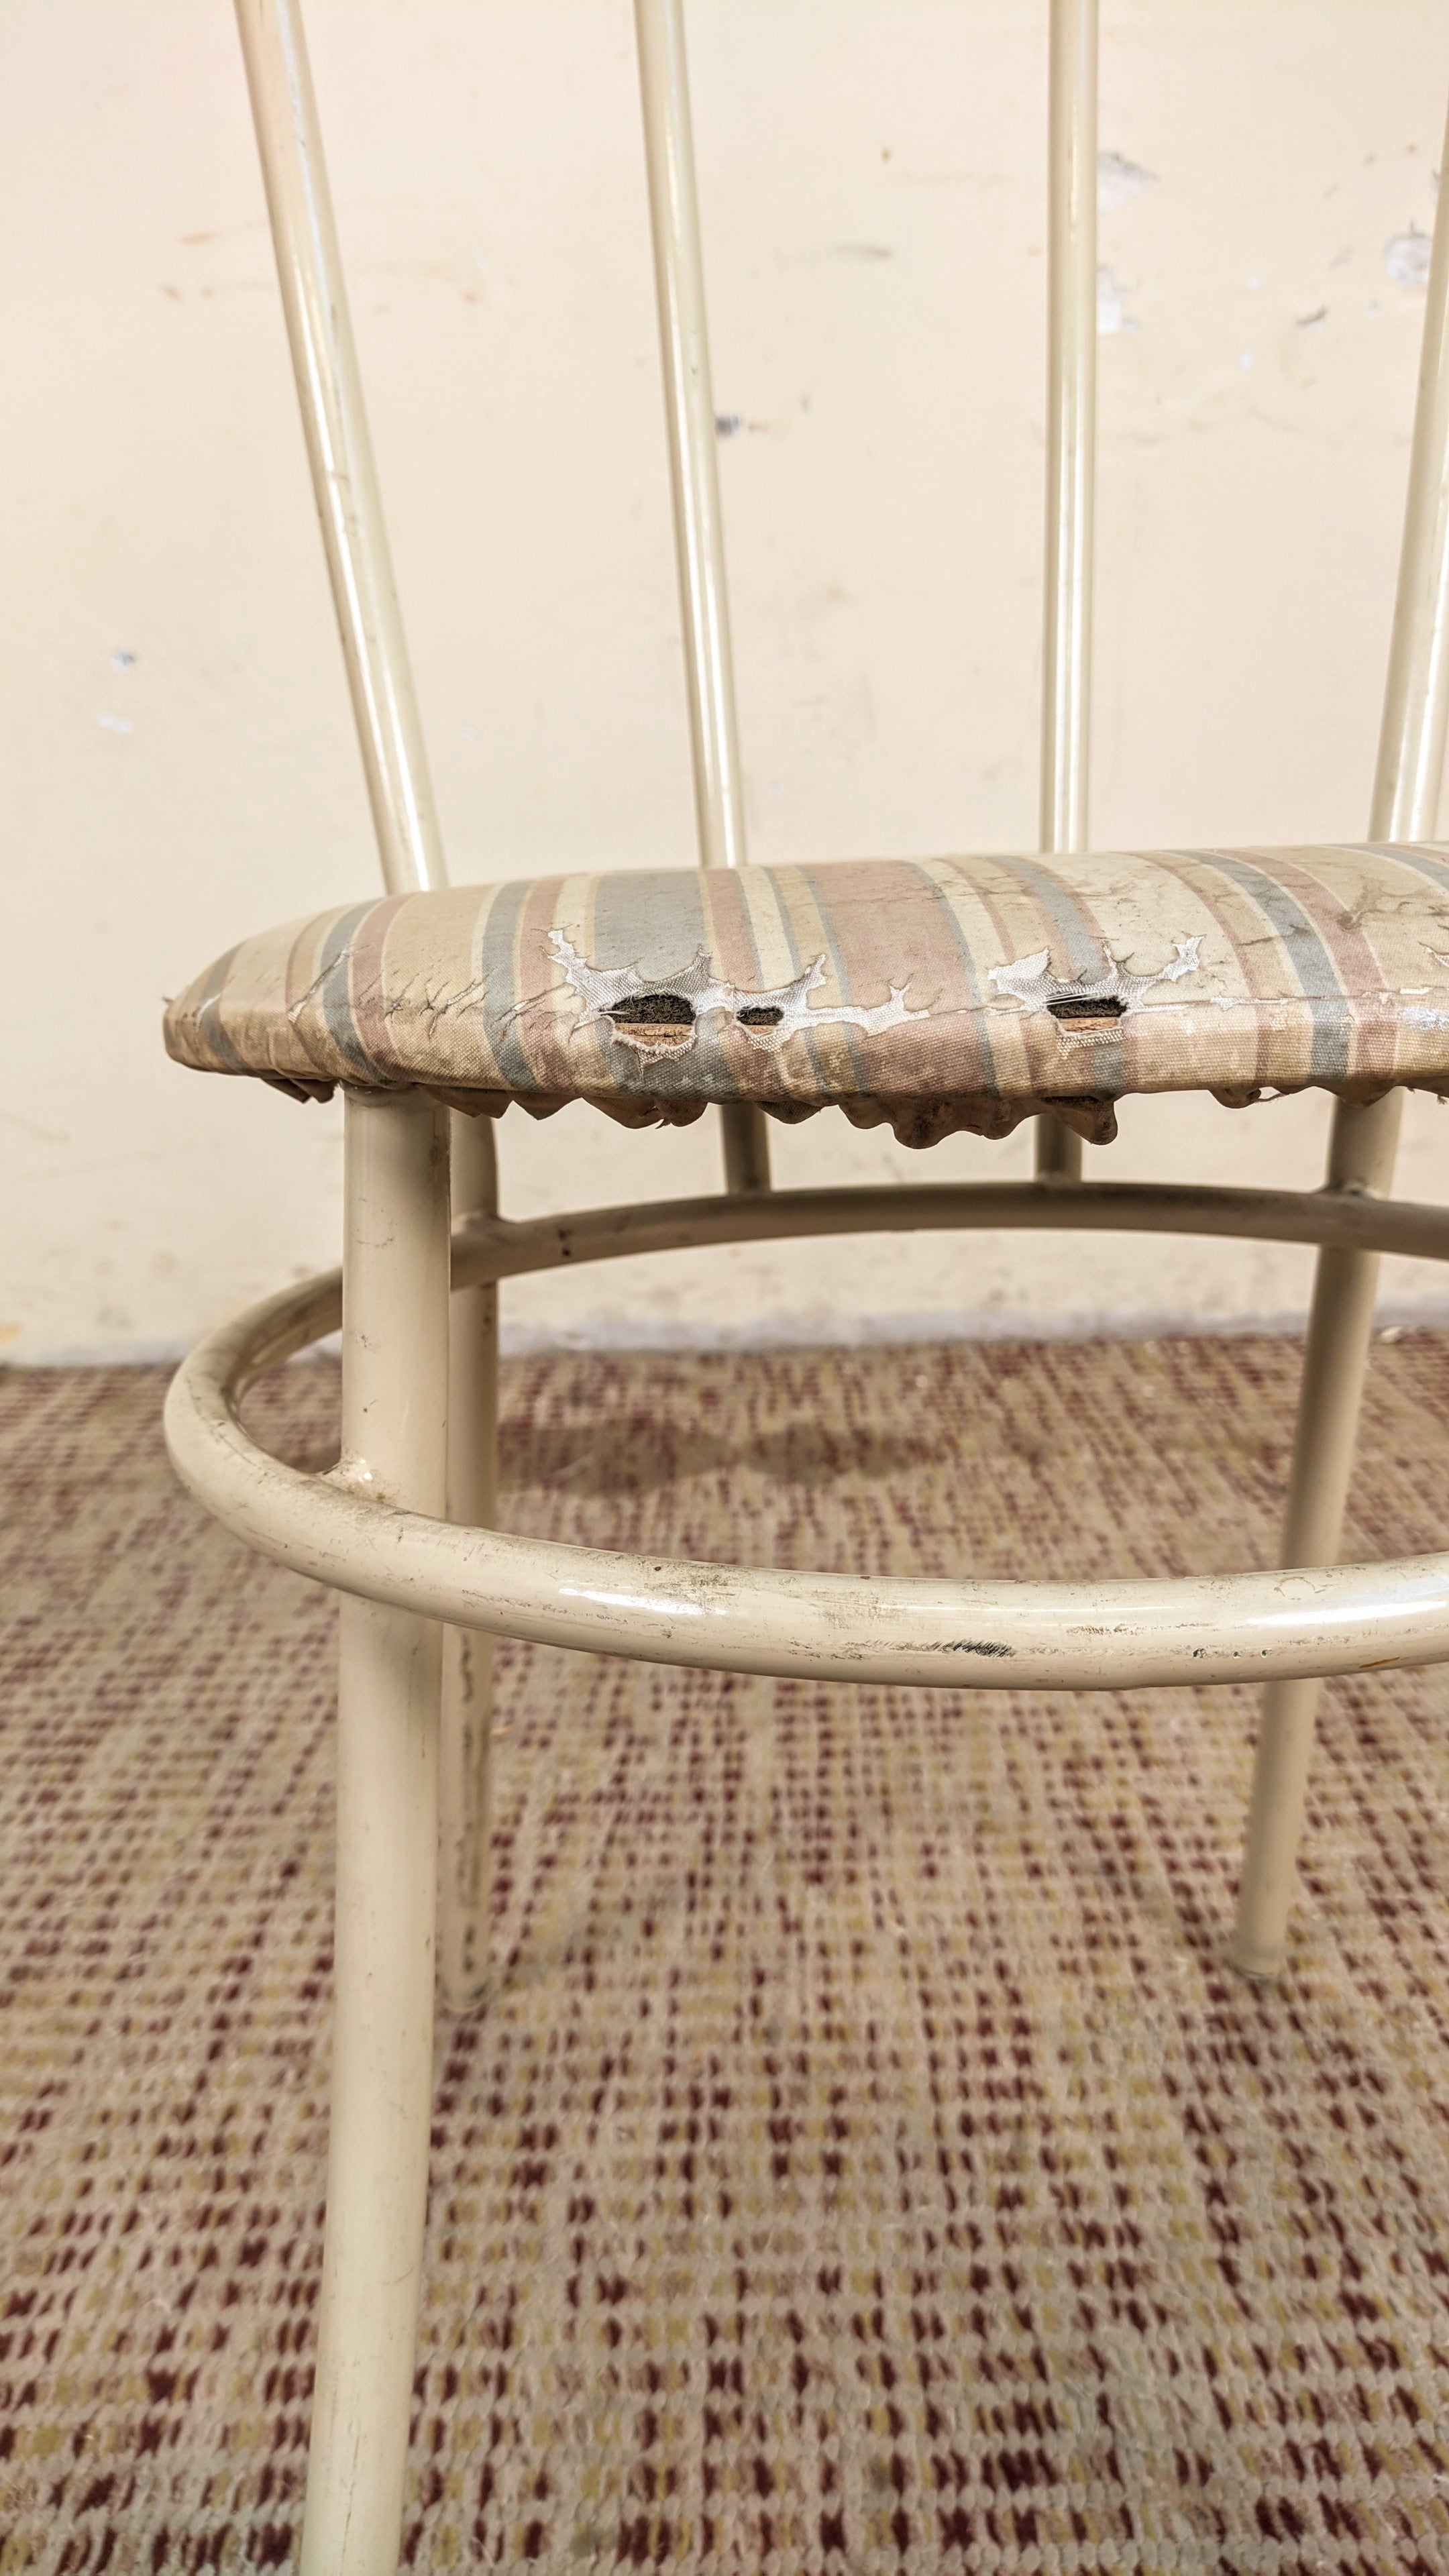 Cadeira anos 80 em ferro e tecido listrado